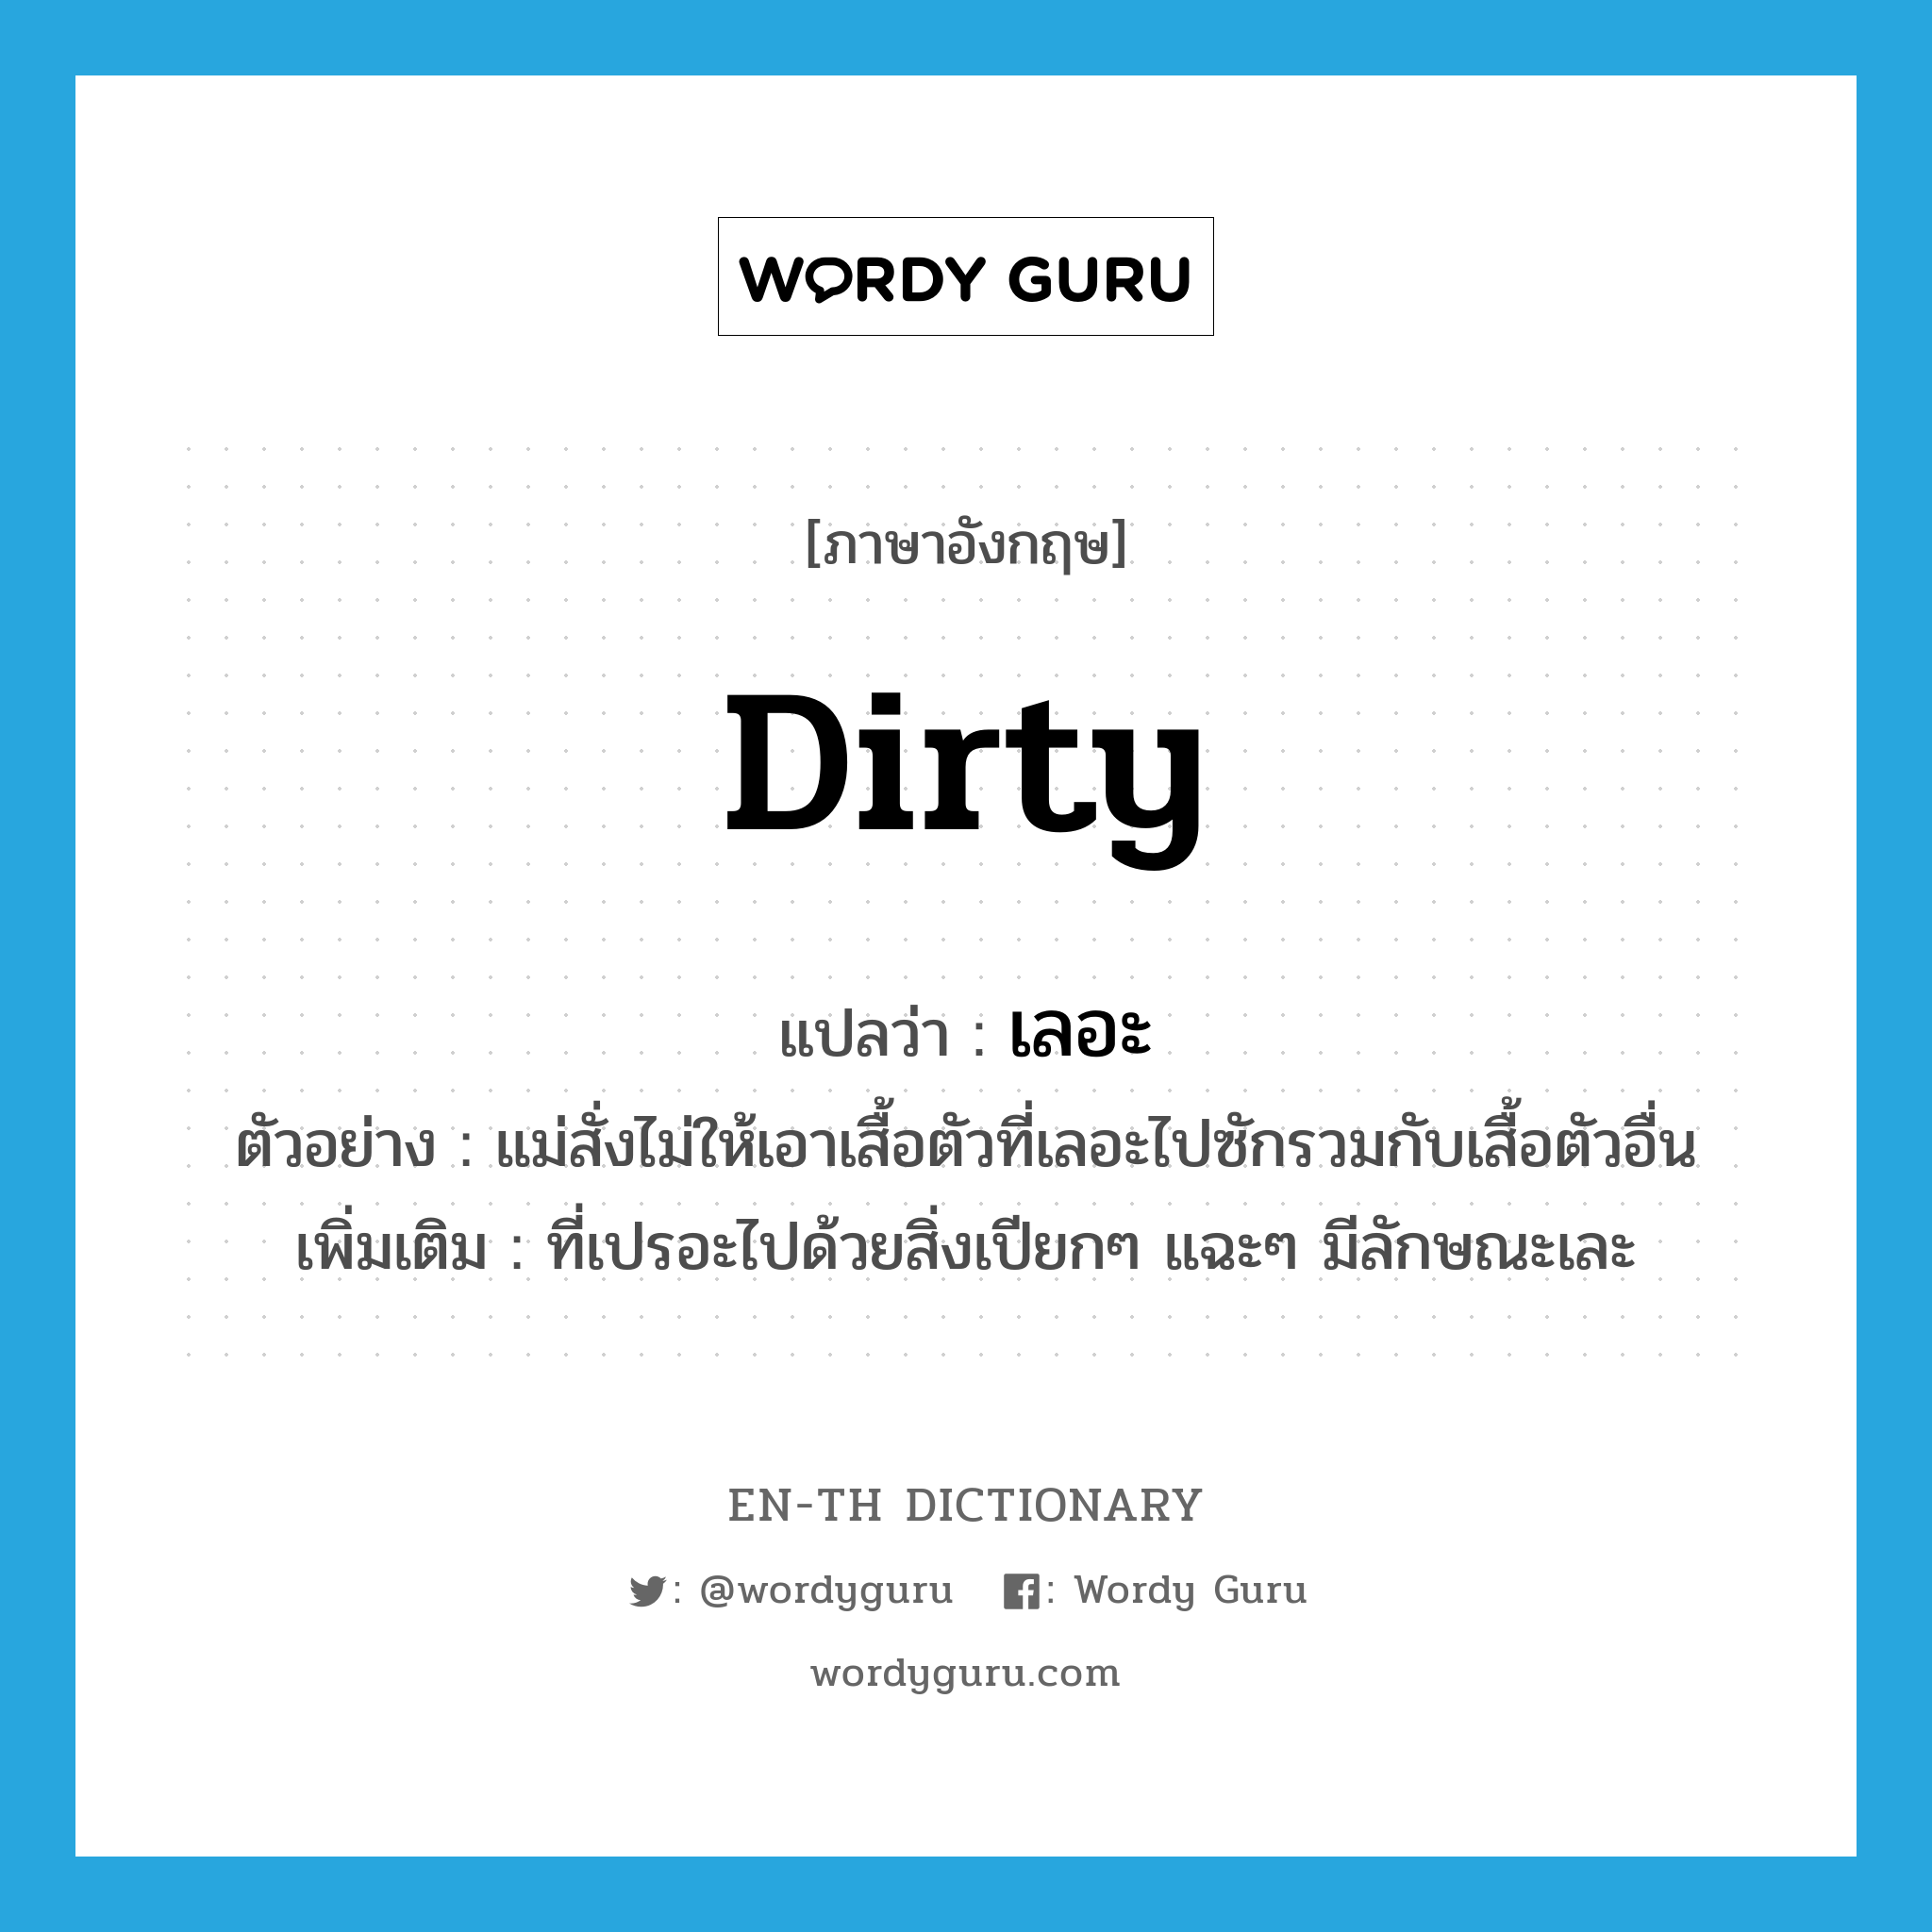 dirty แปลว่า?, คำศัพท์ภาษาอังกฤษ dirty แปลว่า เลอะ ประเภท ADJ ตัวอย่าง แม่สั่งไม่ให้เอาเสื้อตัวที่เลอะไปซักรวมกับเสื้อตัวอื่น เพิ่มเติม ที่เปรอะไปด้วยสิ่งเปียกๆ แฉะๆ มีลักษณะเละ หมวด ADJ